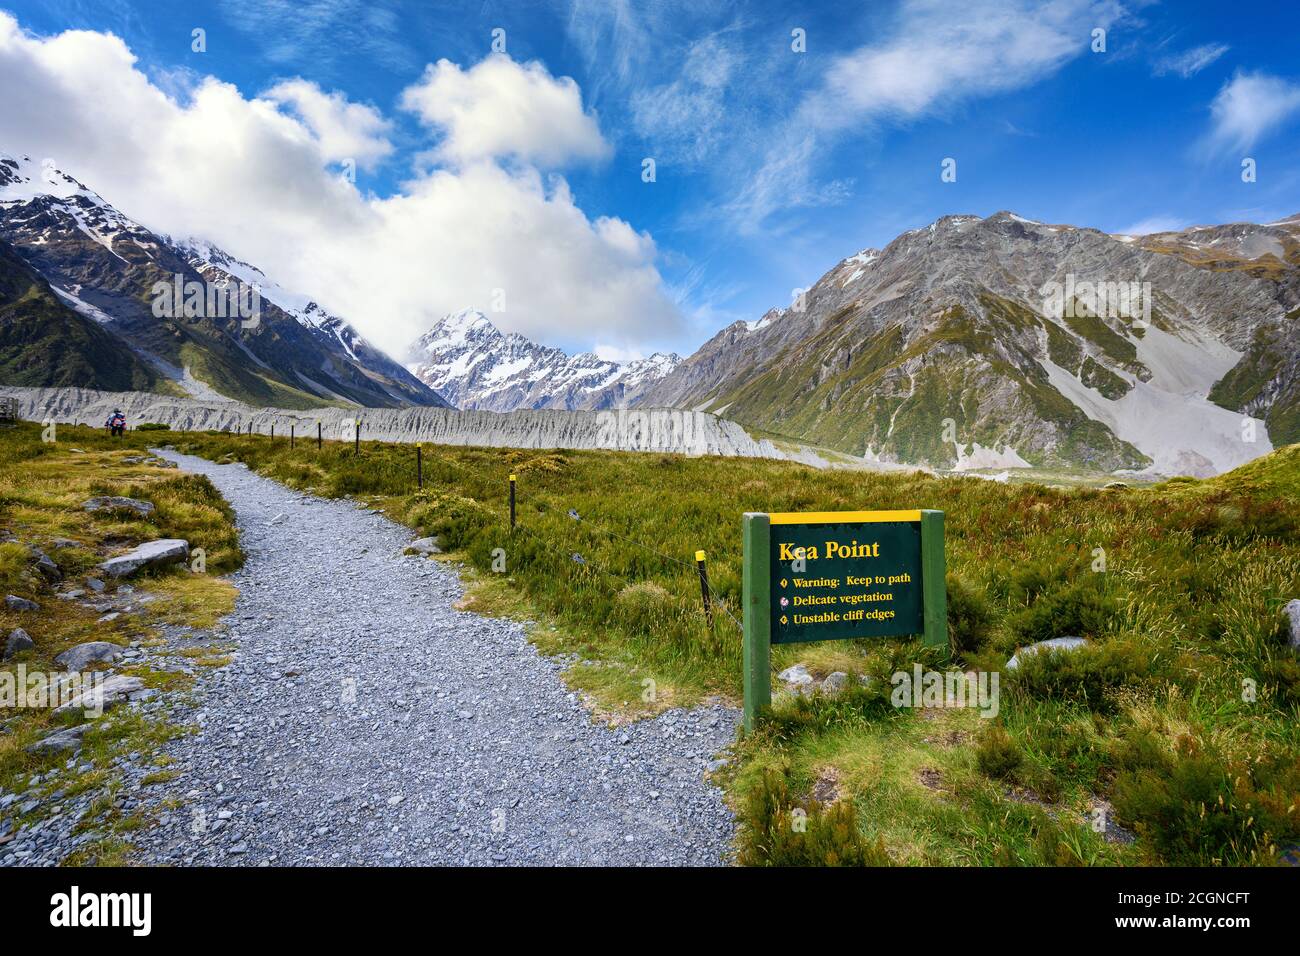 Panneaux et chemins pour voir les points de vue à la piste de Kea point dans le parc national de Mount Cook, les hautes montagnes rocheuses et l'herbe verte en été en Nouvelle-Zélande. Banque D'Images